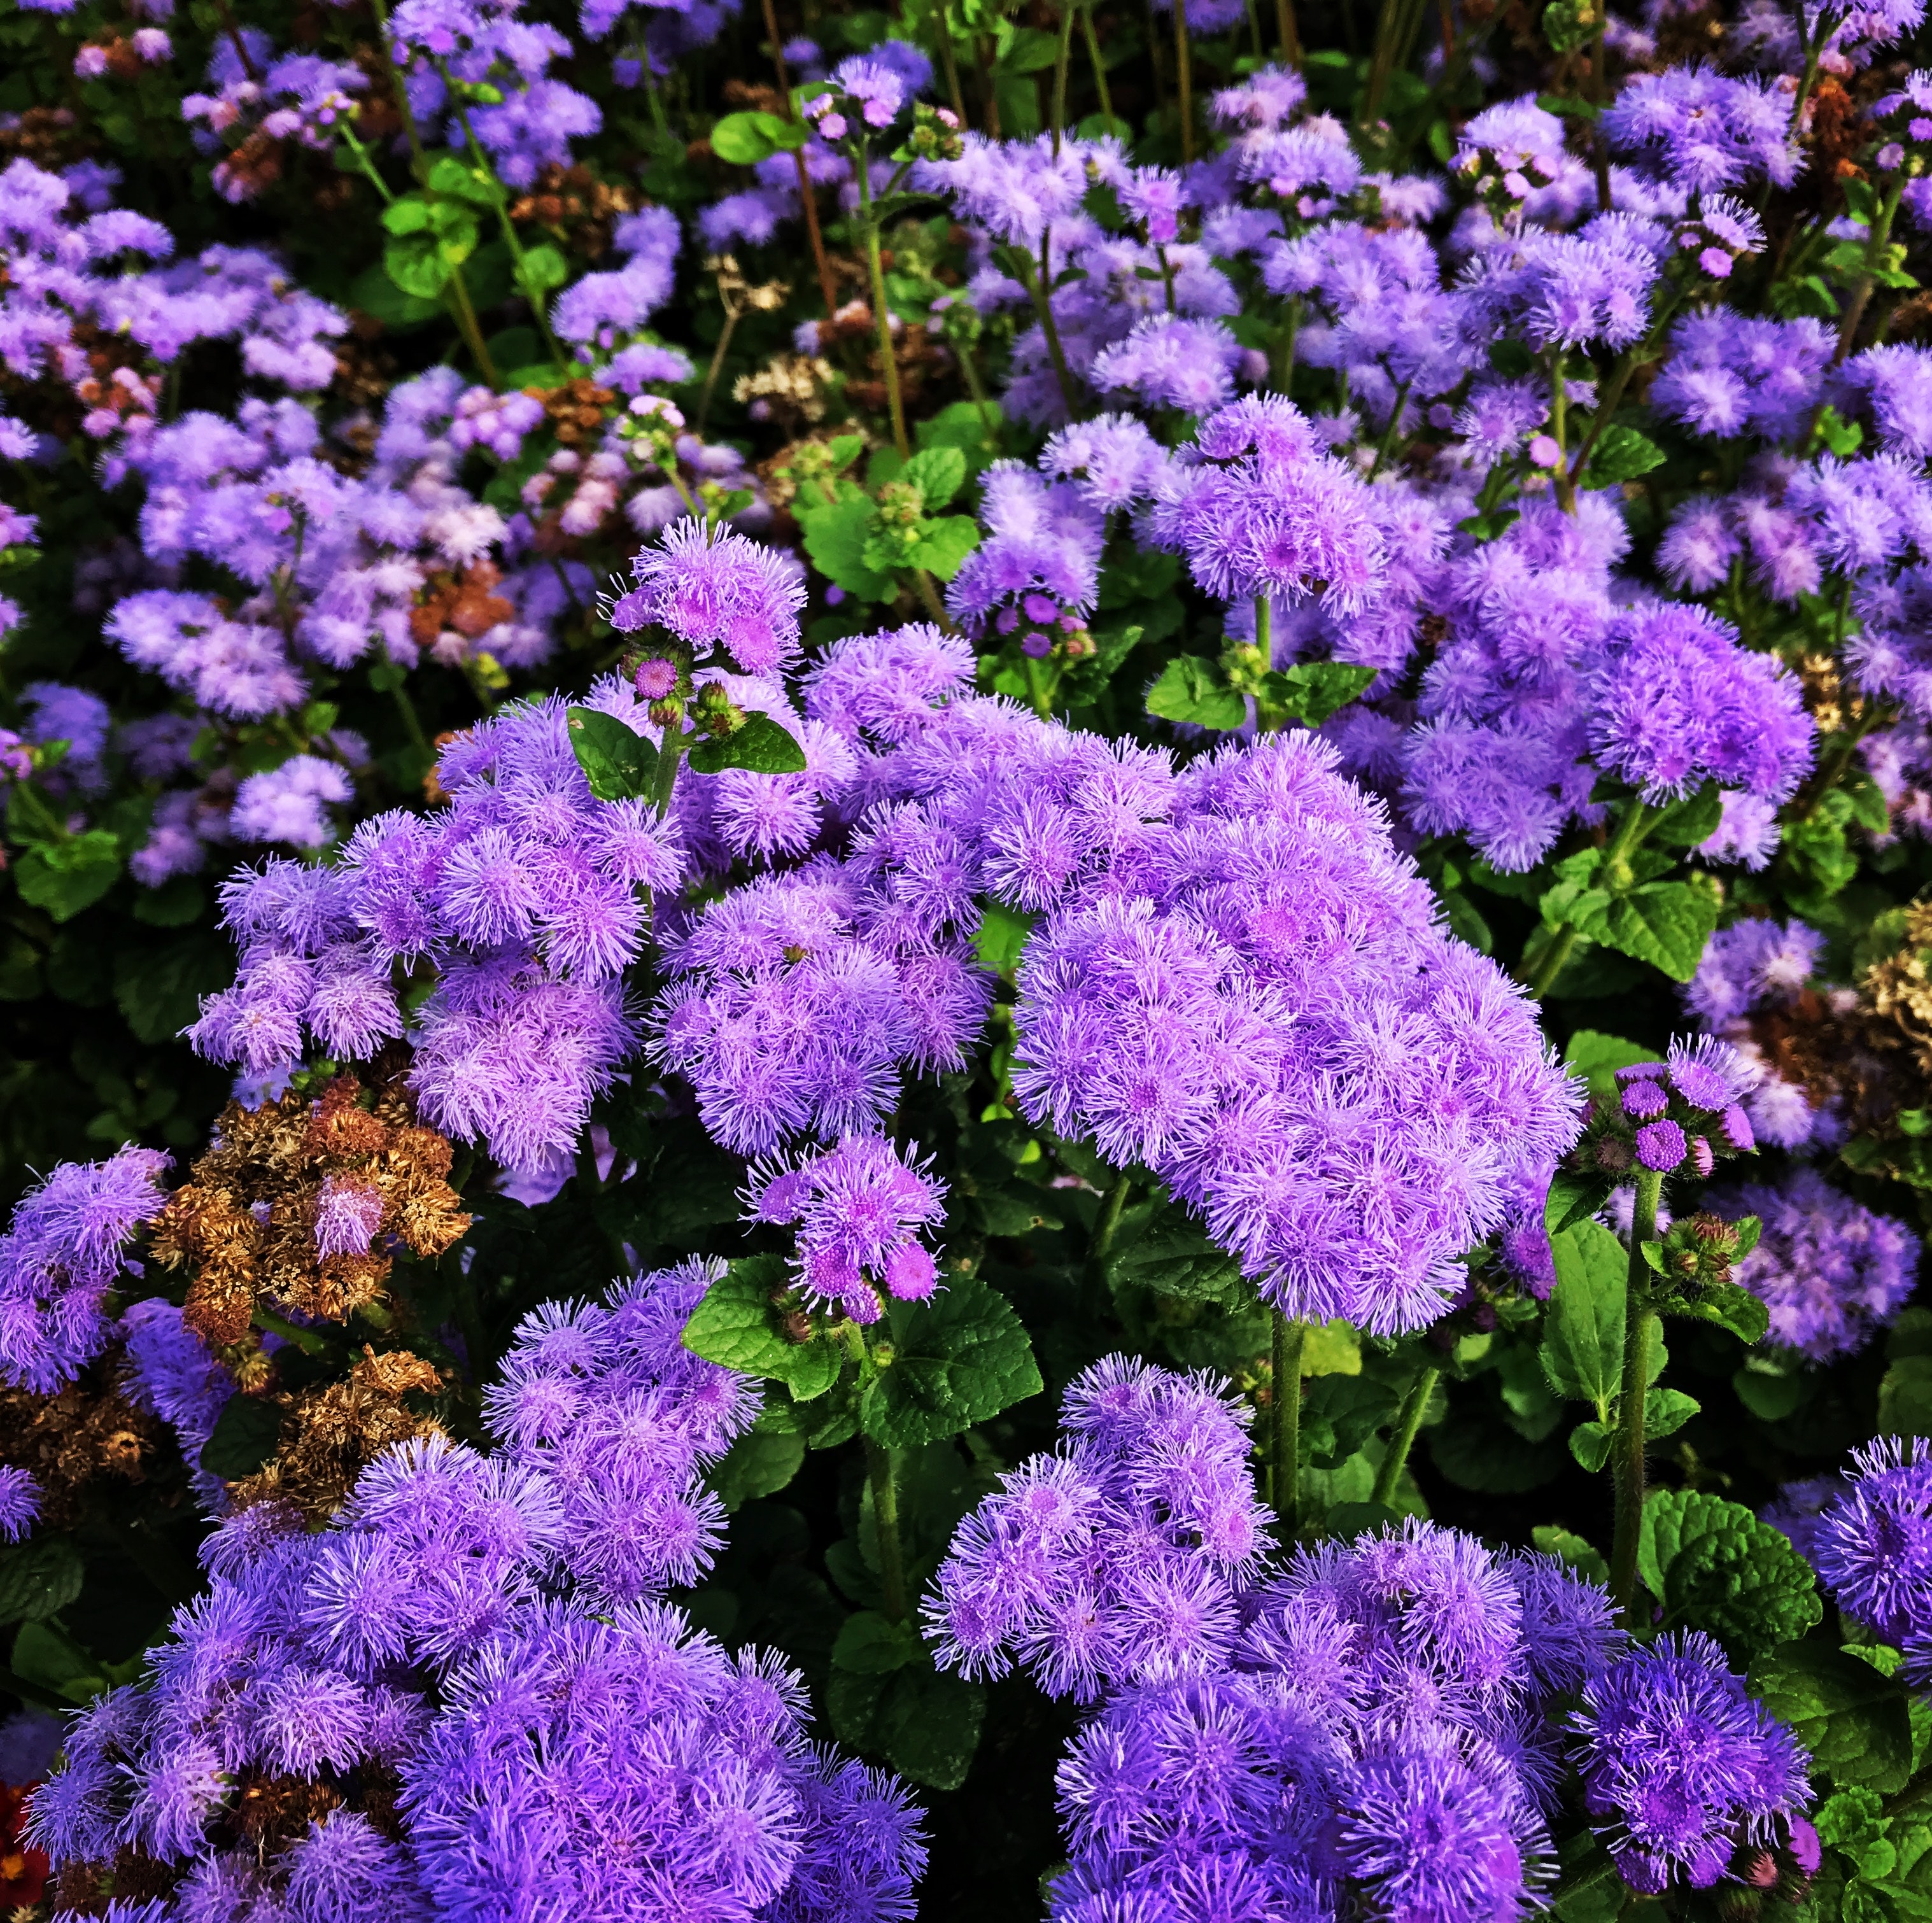 Purple petaled flowers photo